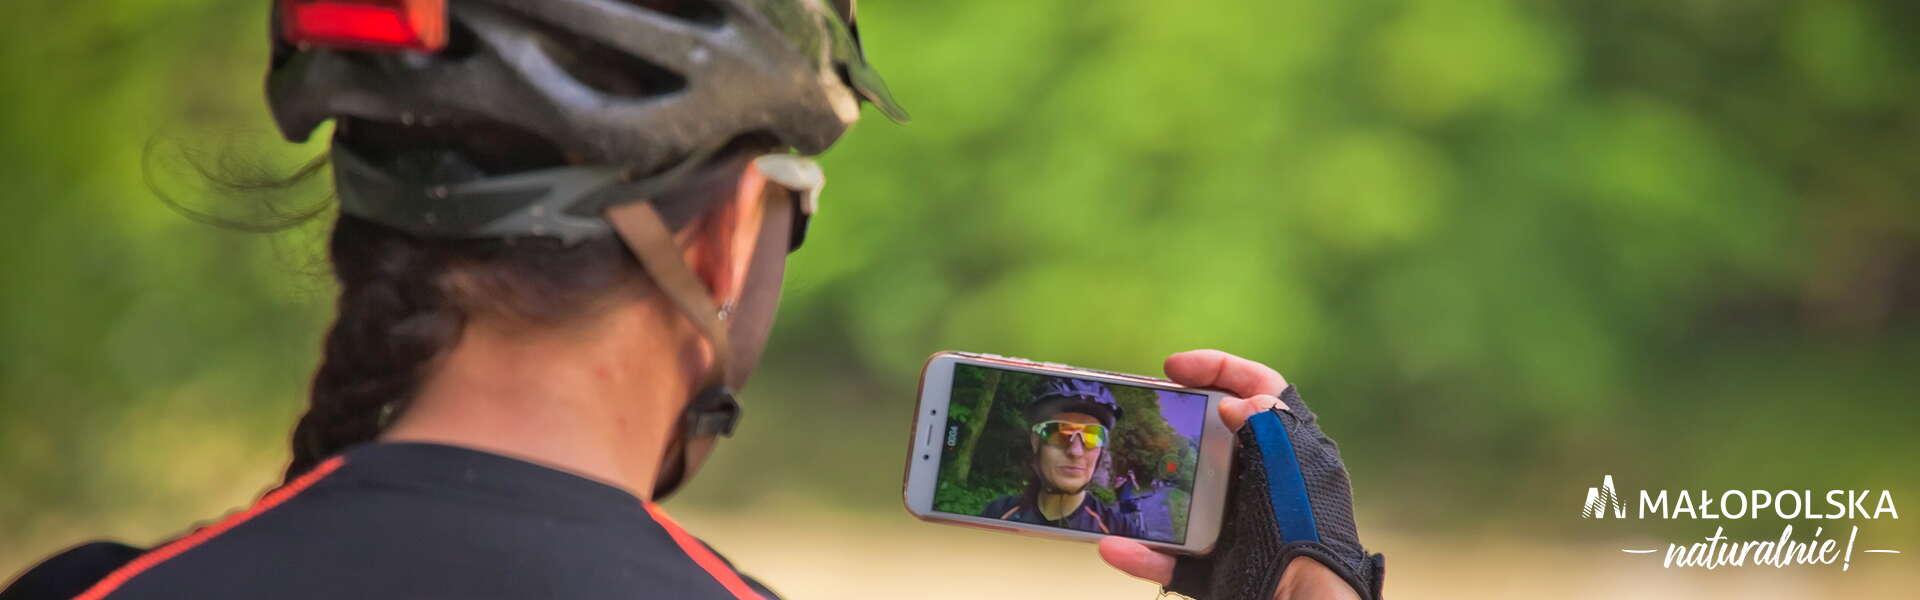 Kobietę, którą w ręku trzyma telefon z włączona aplikacją VisitMałopolska. W ekranie telefonu odbija się jej twarz. Ubrana jest w kas i okulary przeciwsłoneczne, na rękach ma rękawiczki do jazdy na rowerze.